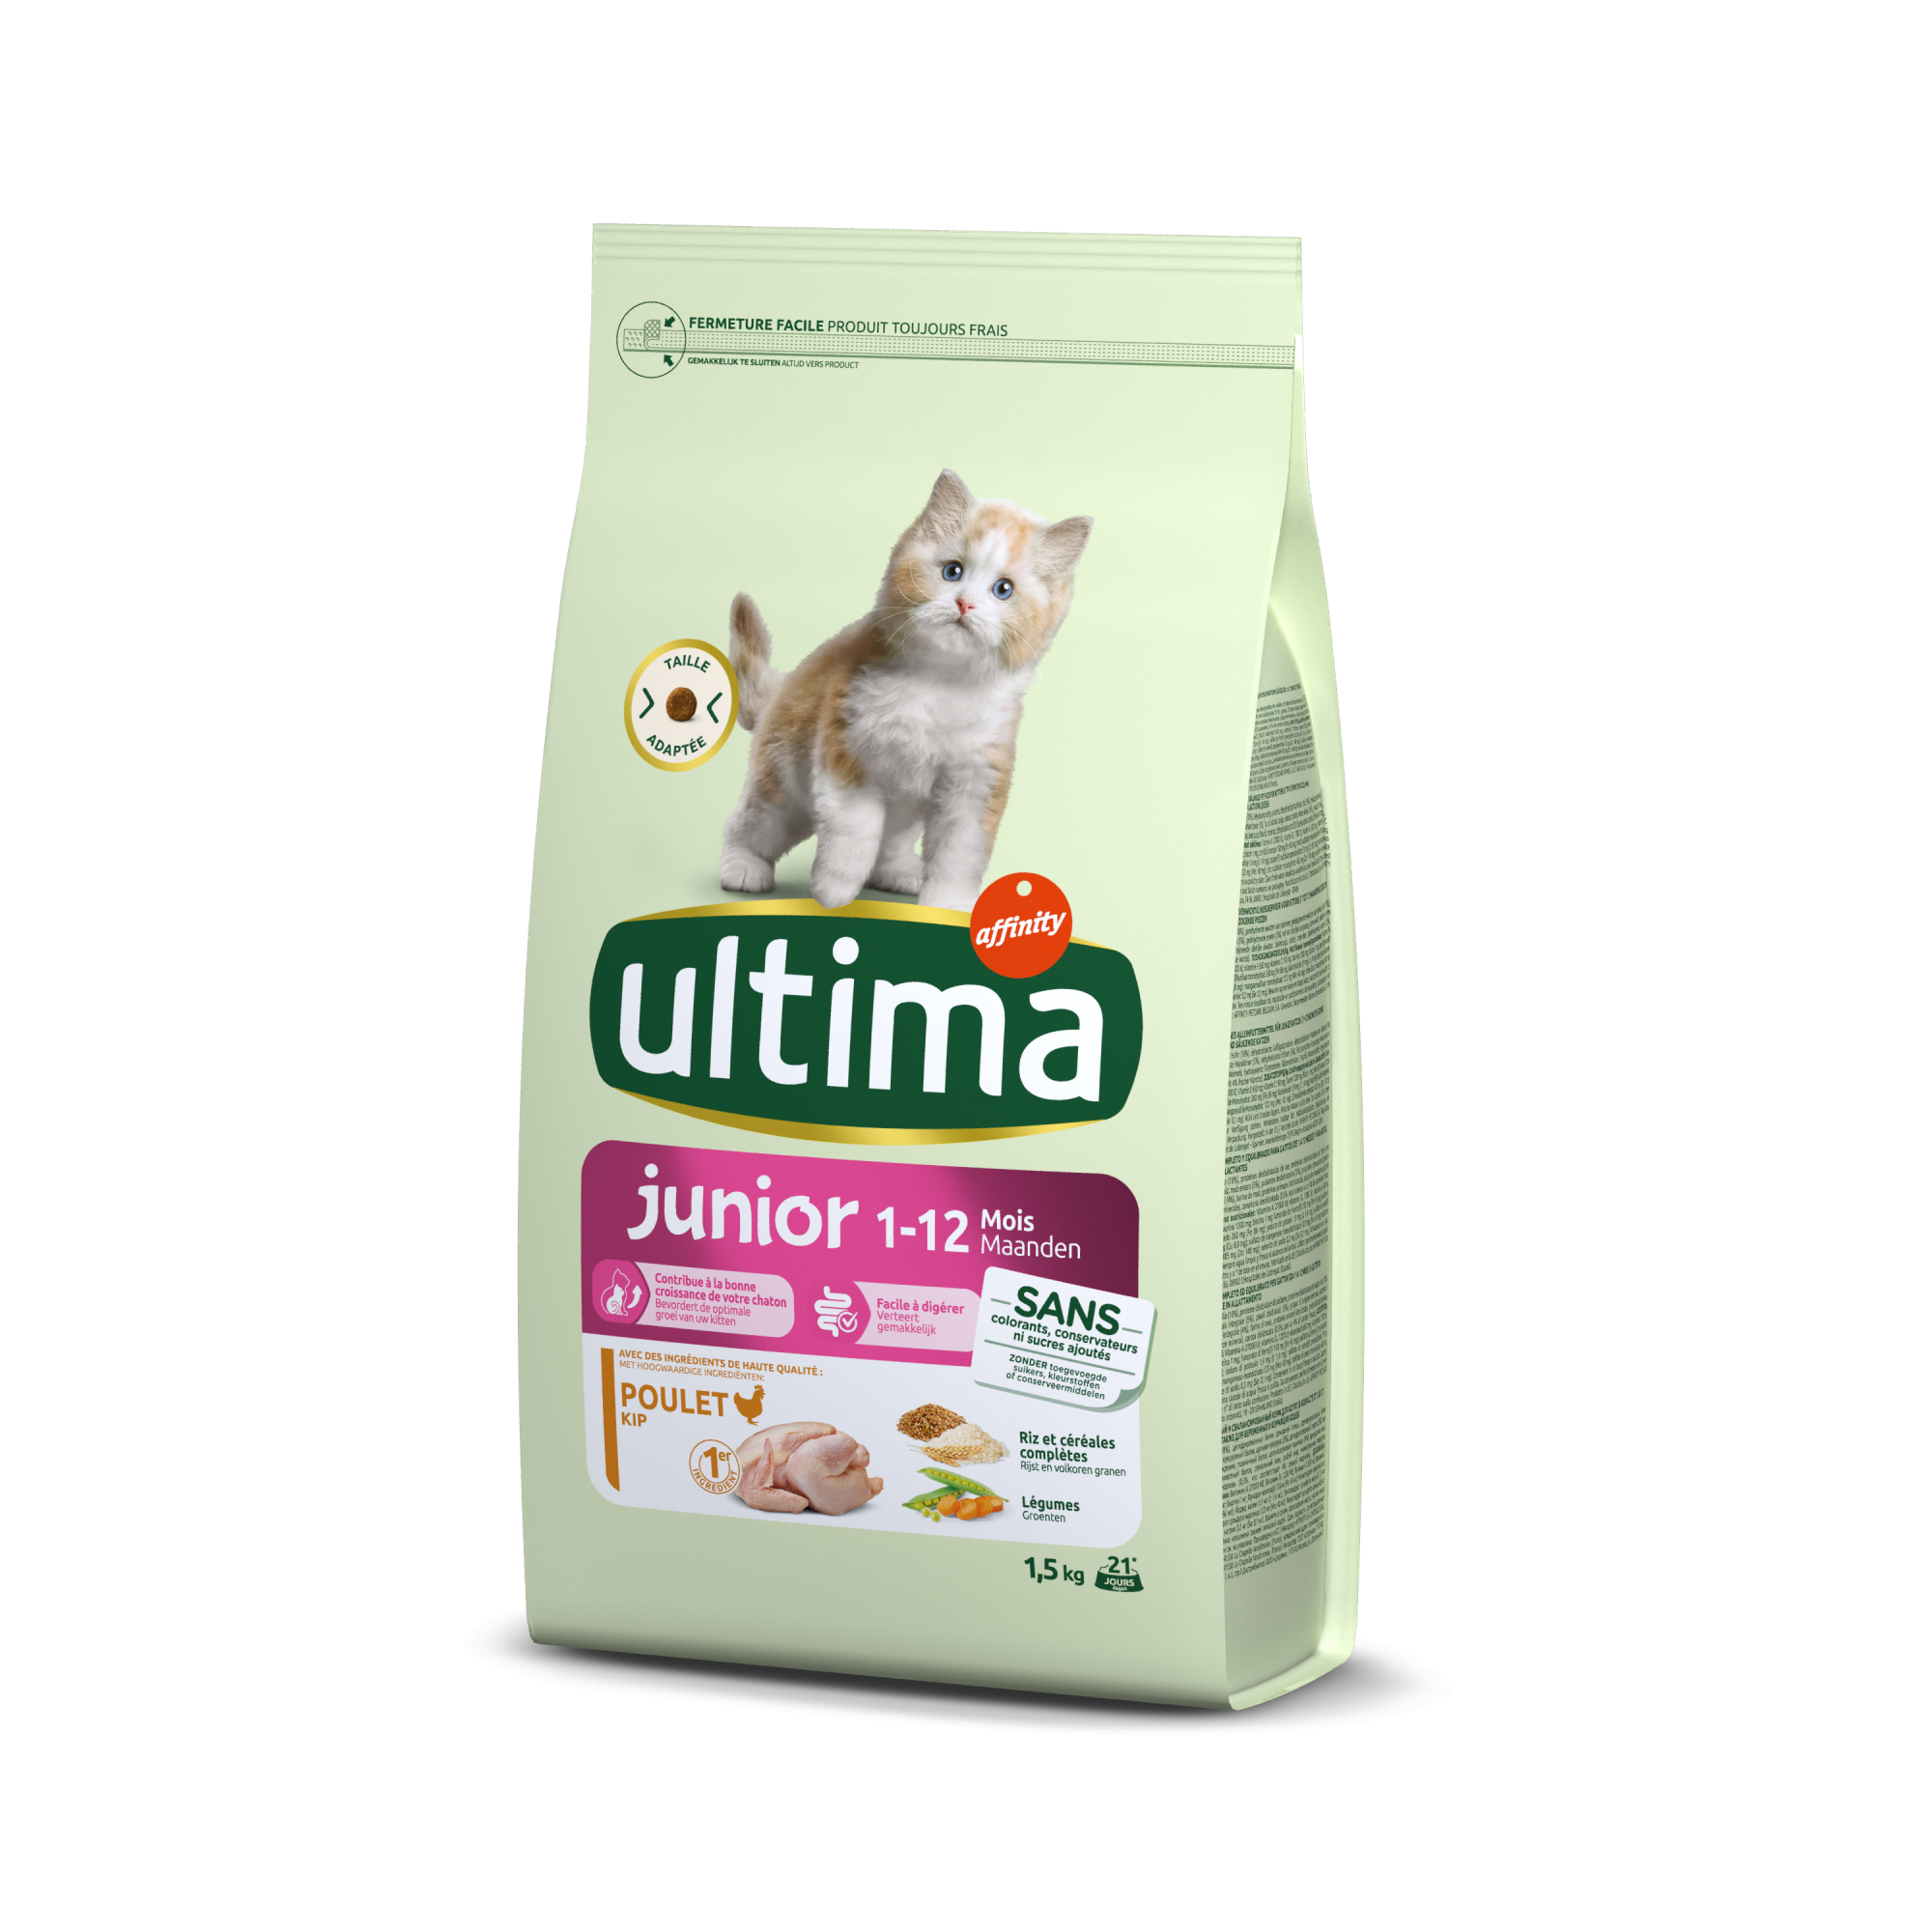 Affinity ULTIMA Sterilizzati Junior al pollo per gattini